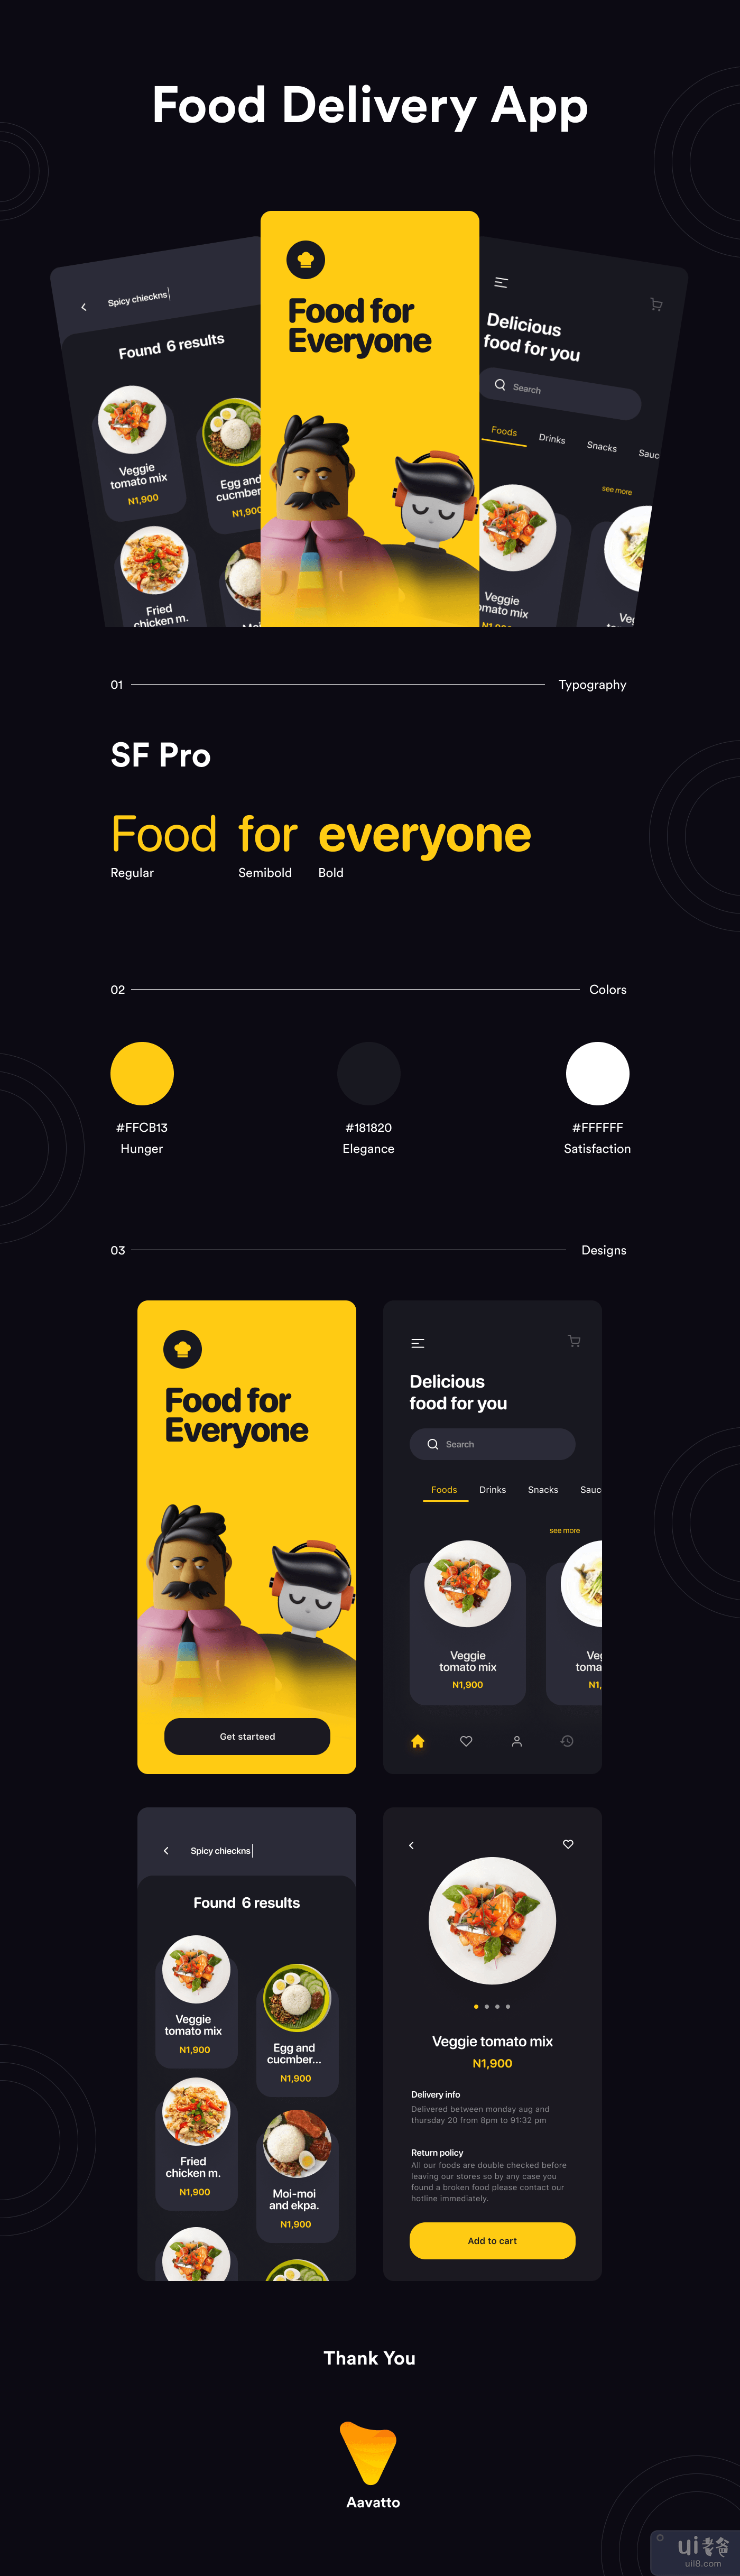 送餐应用程序设计(Food Delivery App Designs)插图